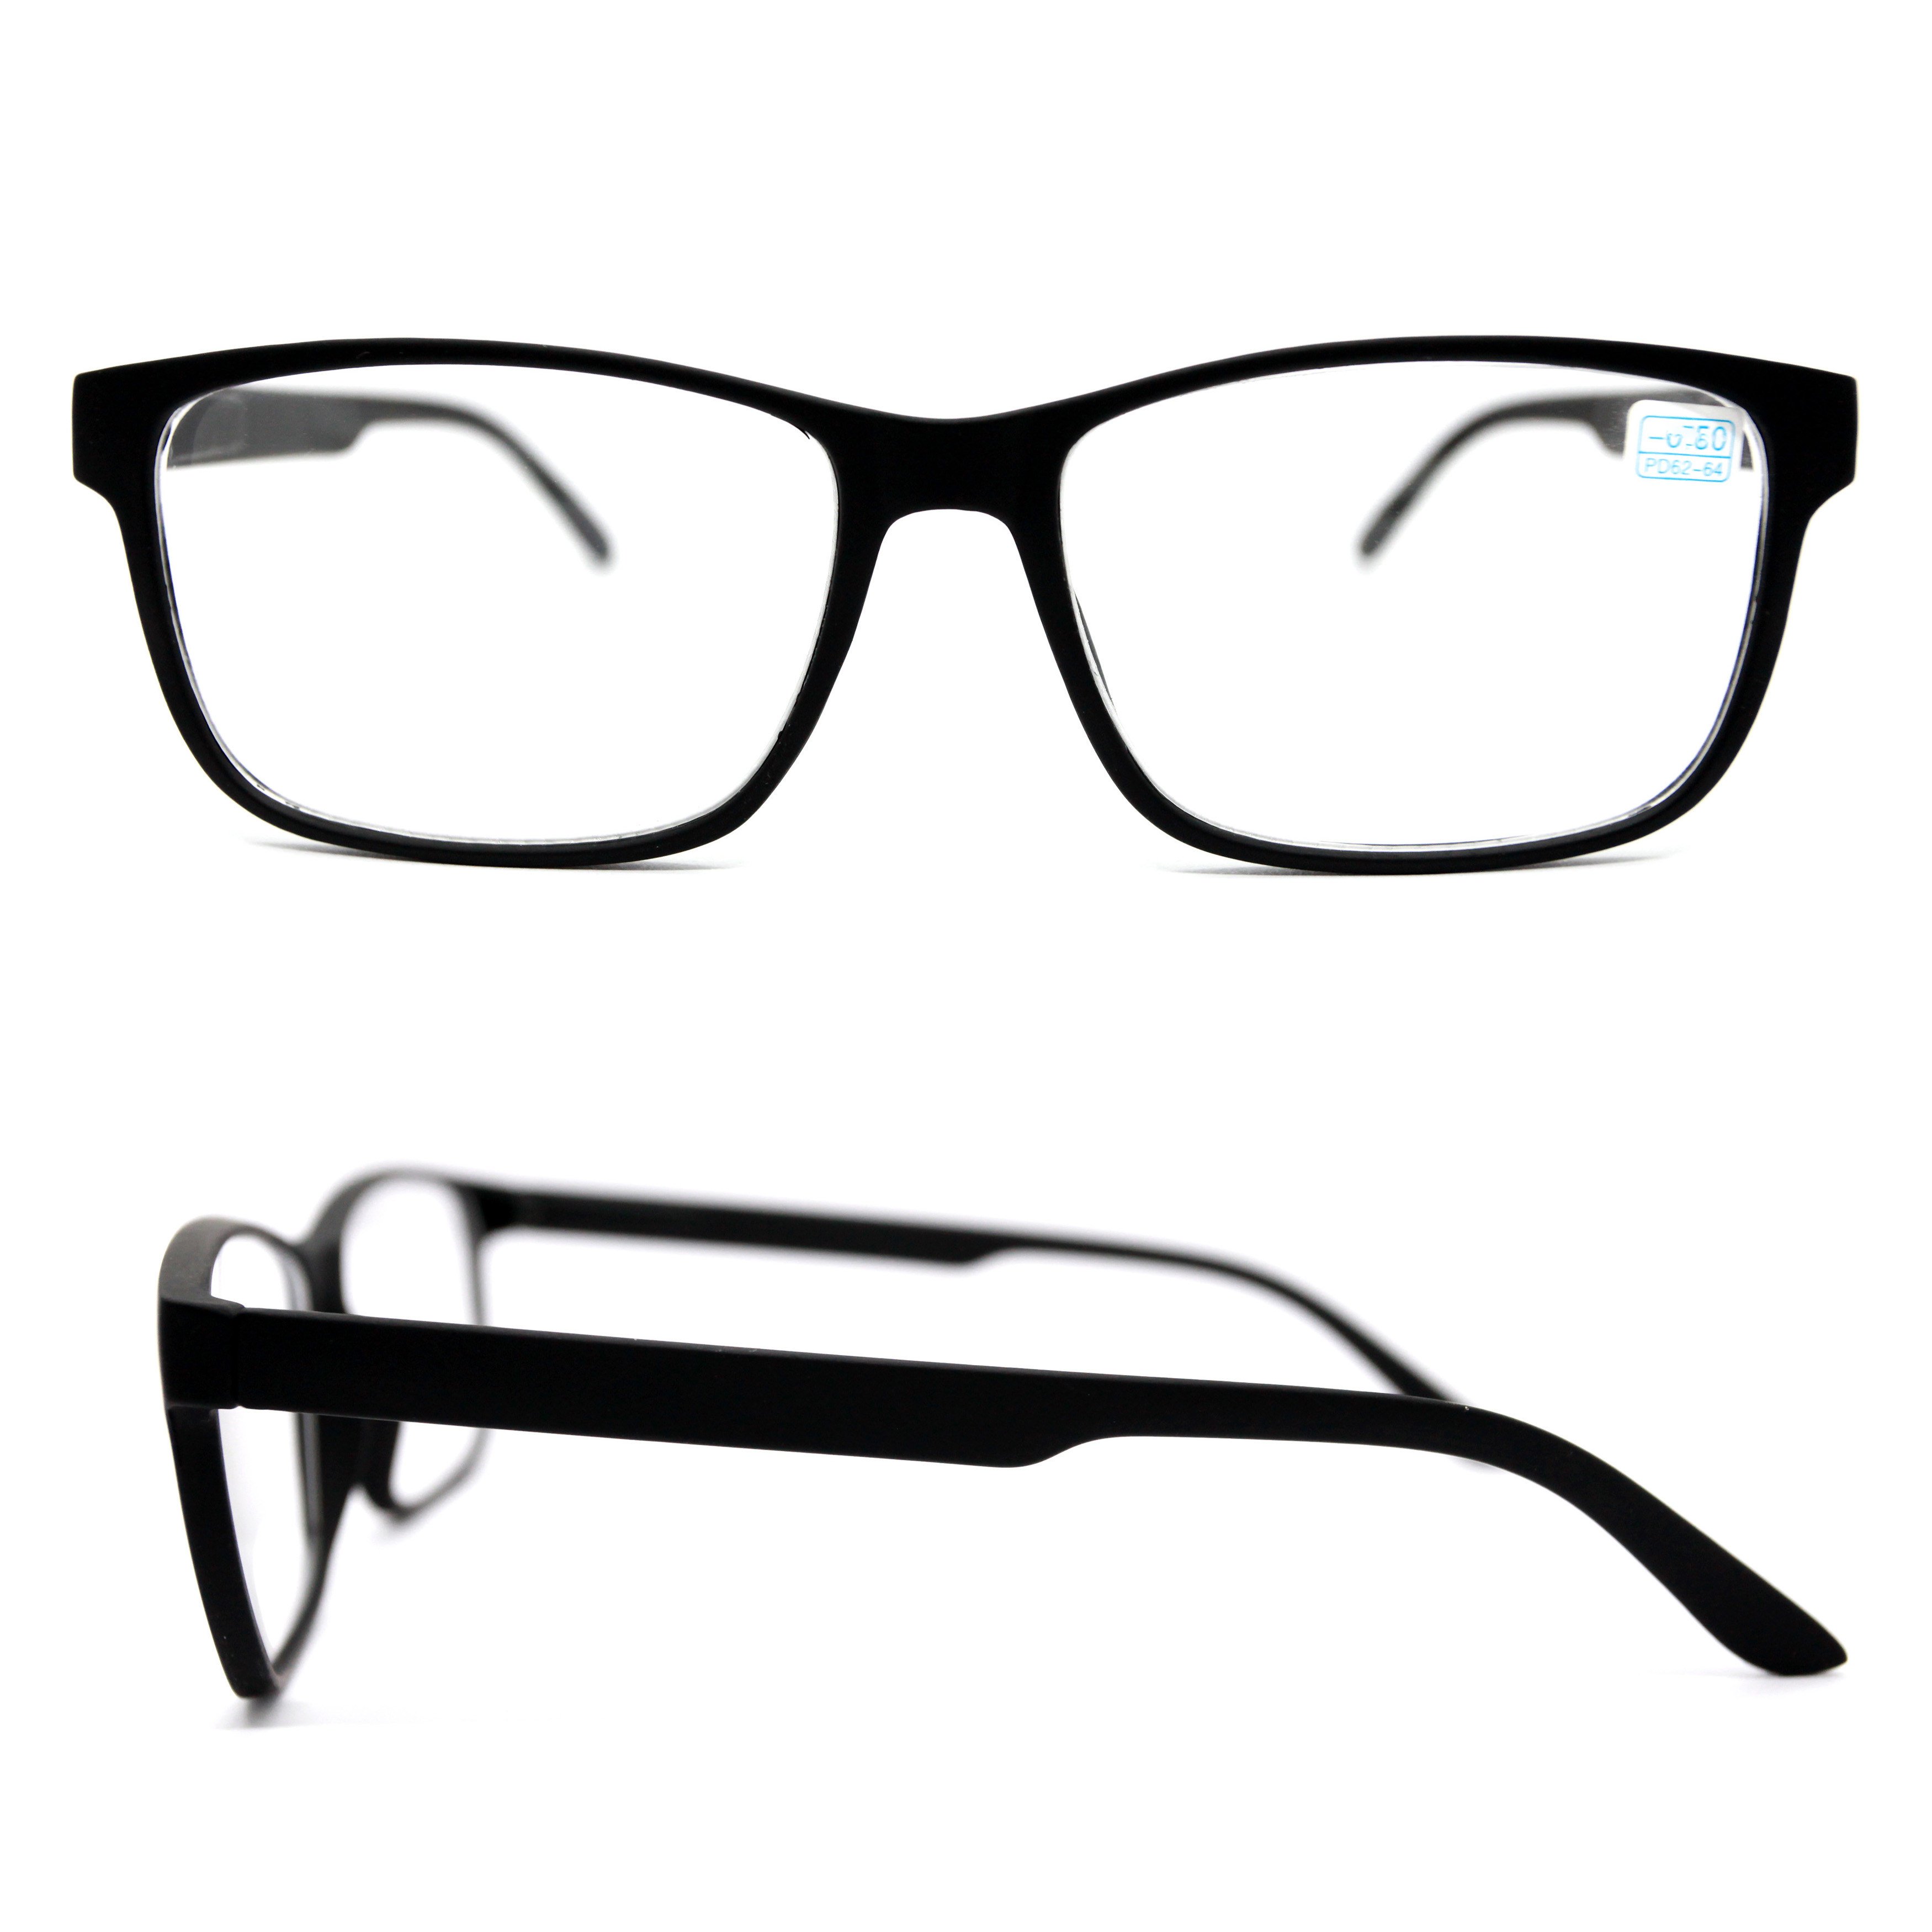 Готовые очки для зрения ВОСТОК 6642 -4,00, без футляра, черный, РЦ 62-64